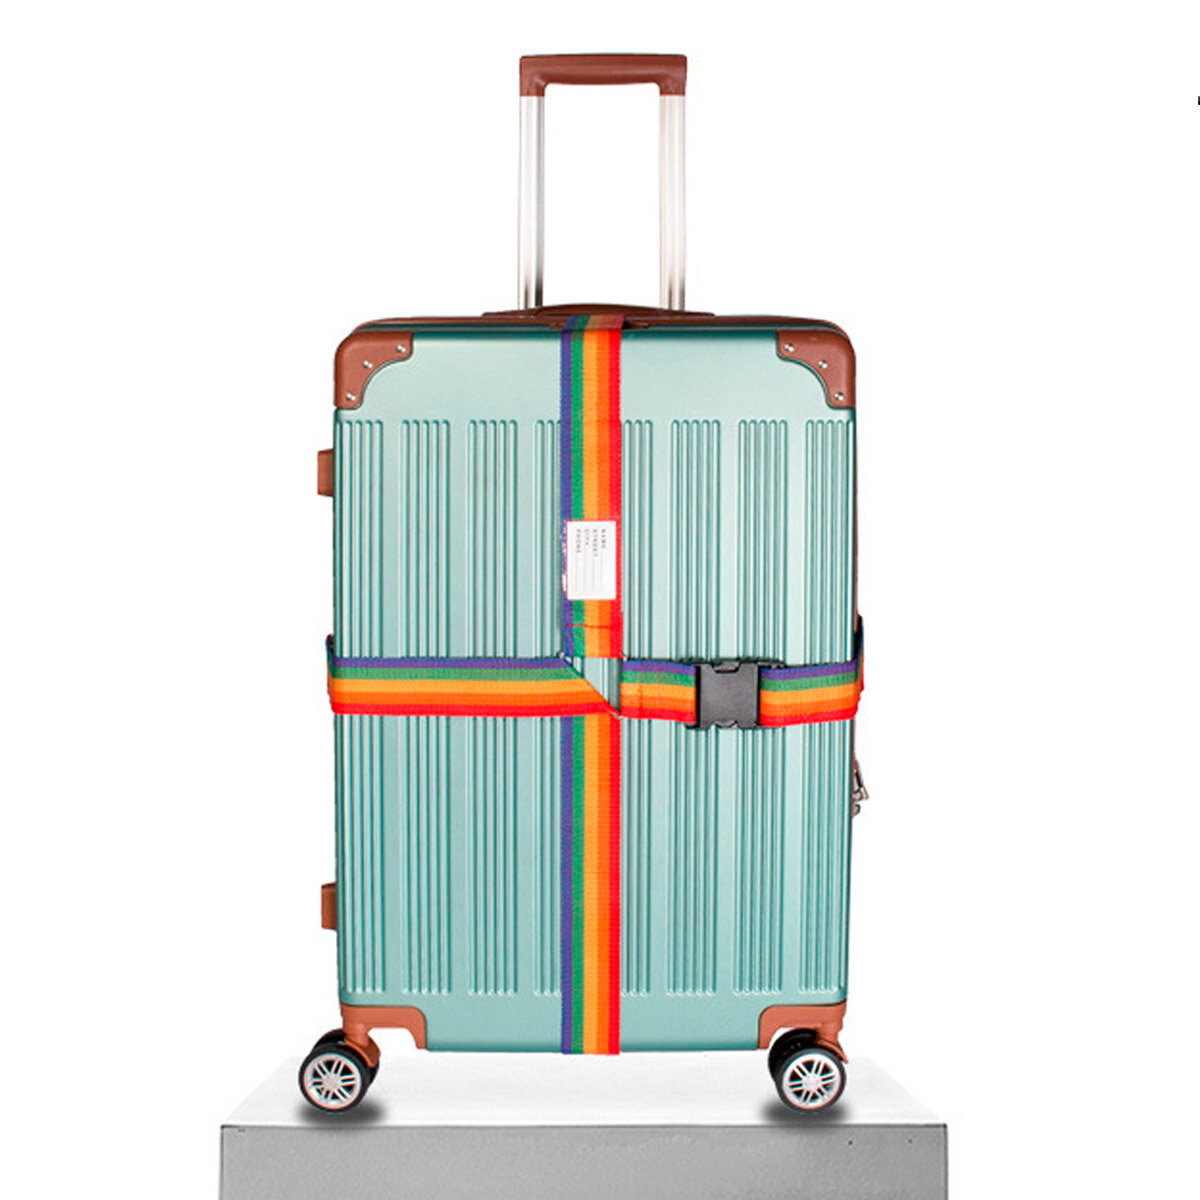 Ремень для чемодана, для багажа, багажный ремень, стяжка багажа и крепления груза, разноцветный